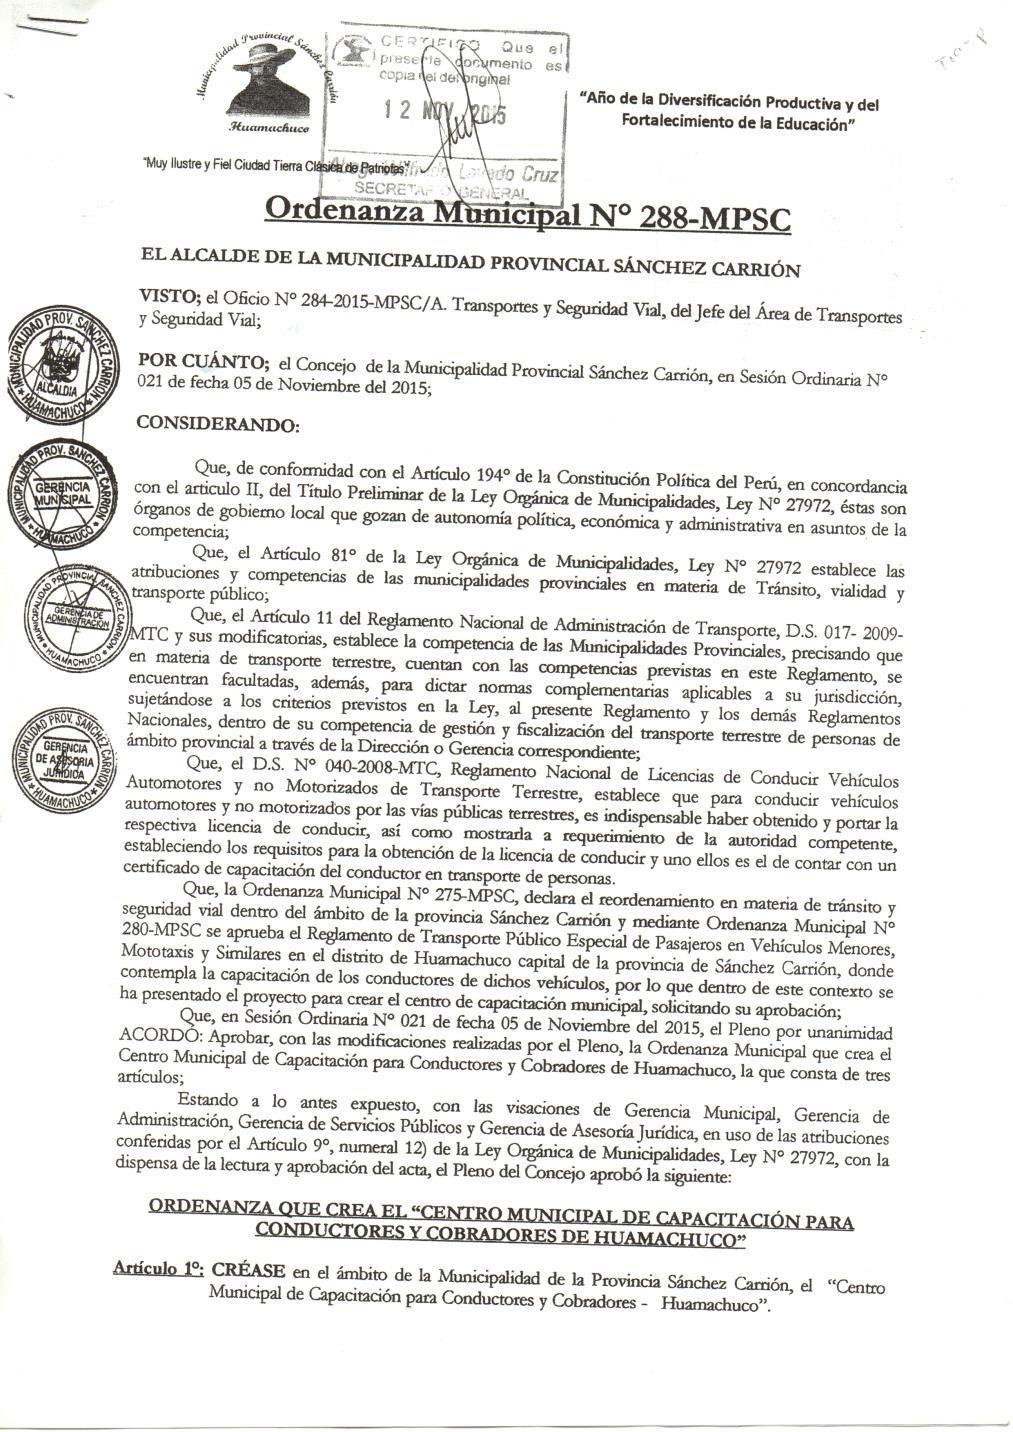 ORDENANZAS MUNICIPALES APROBADAS EN MATERIA DE TRANSPORTE Se logro la aprobación de la ordenanza municipal N 288-2015-MPSC ordenanza que Crea el